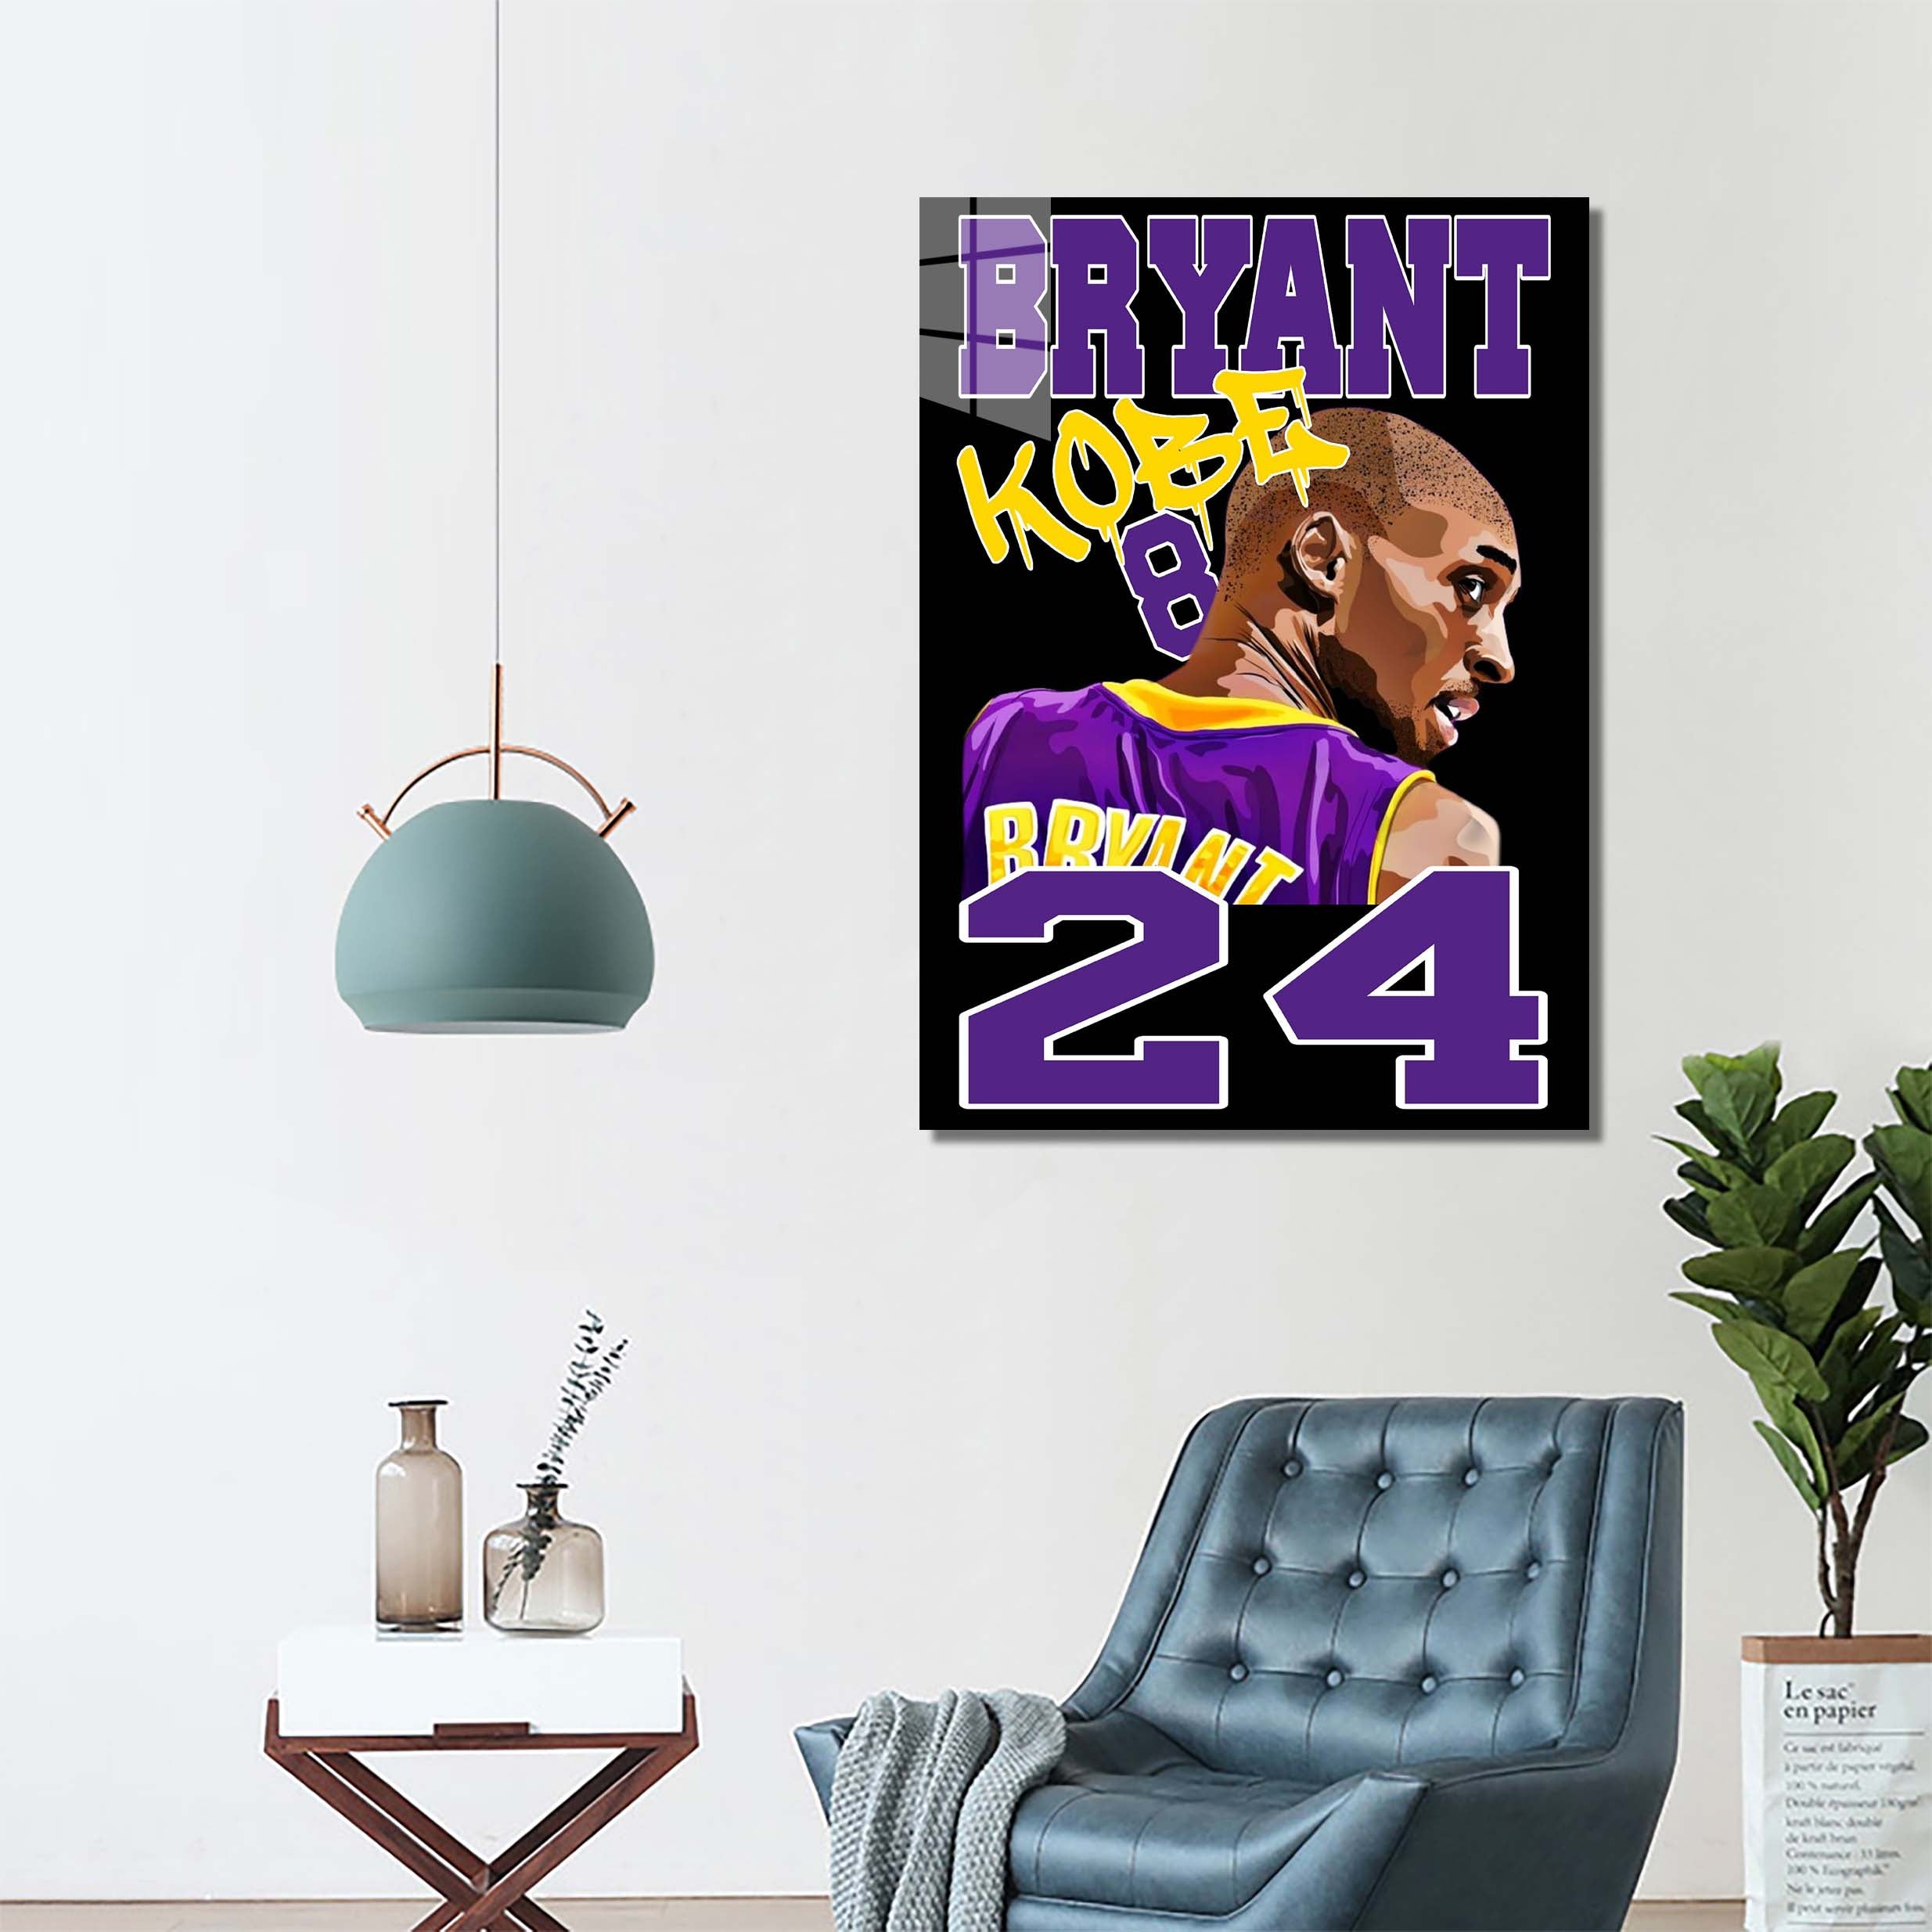 Bryant Kobe 24